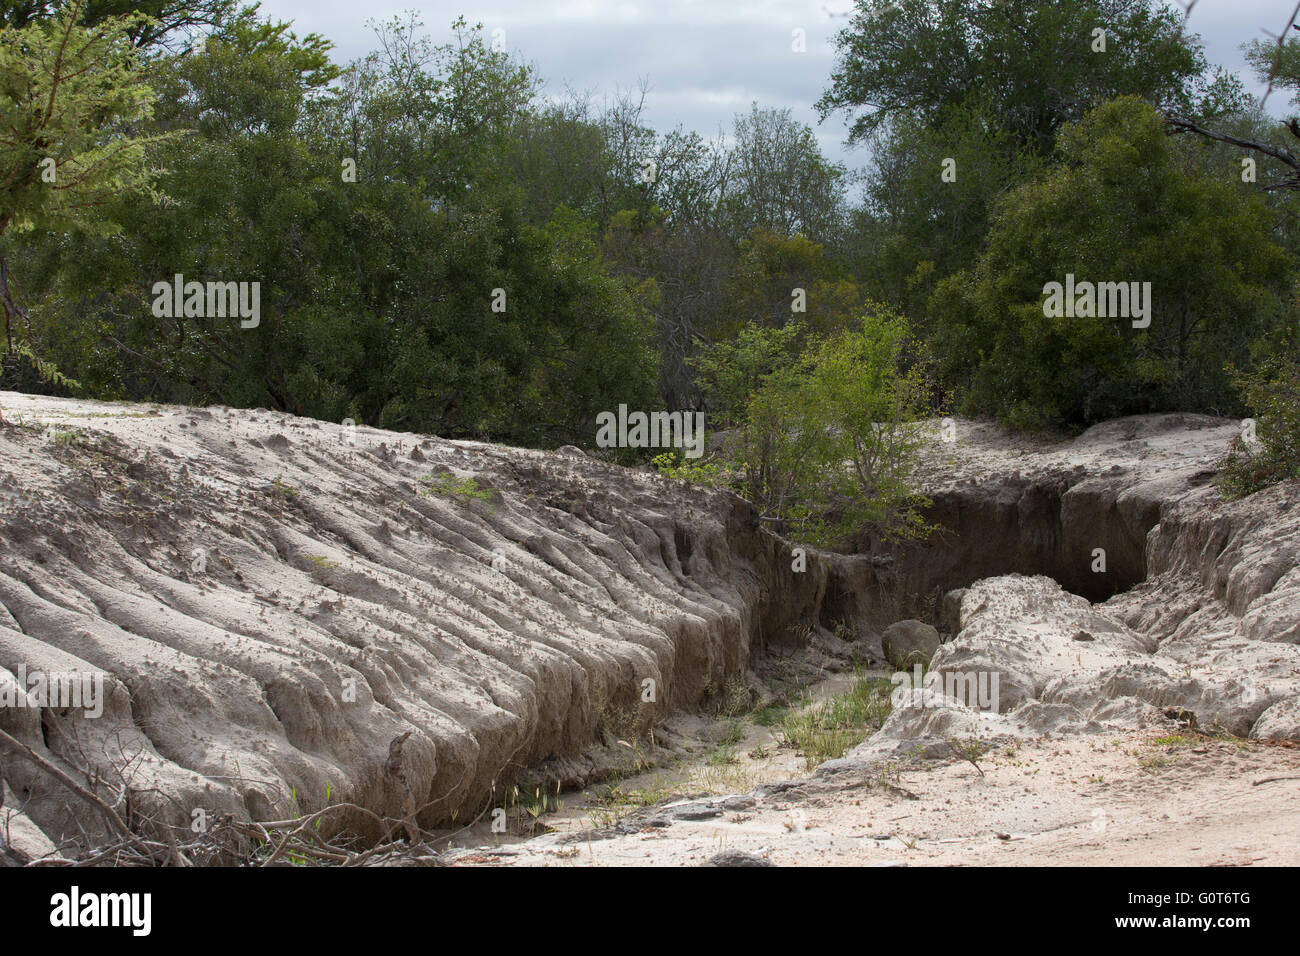 Severe soil erosion donga in sodic soil Stock Photo